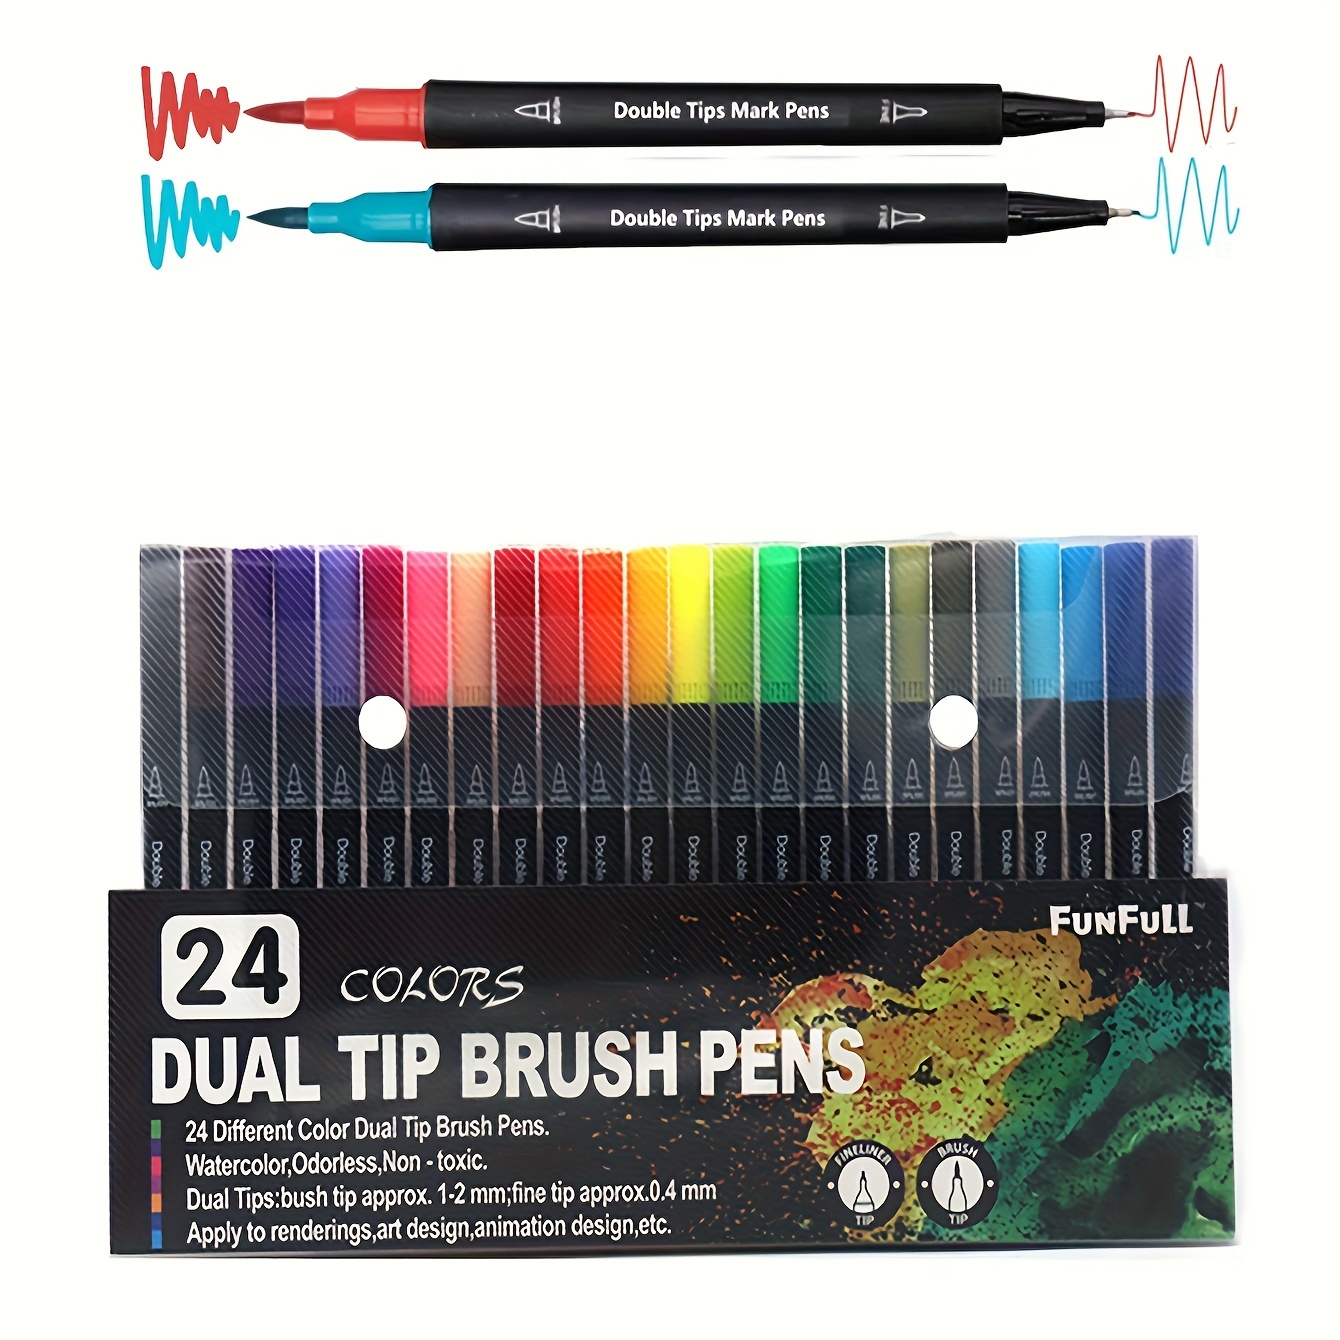 4pcs Gold Metallic Marker Brush Pens For Artist Illustration Lettering